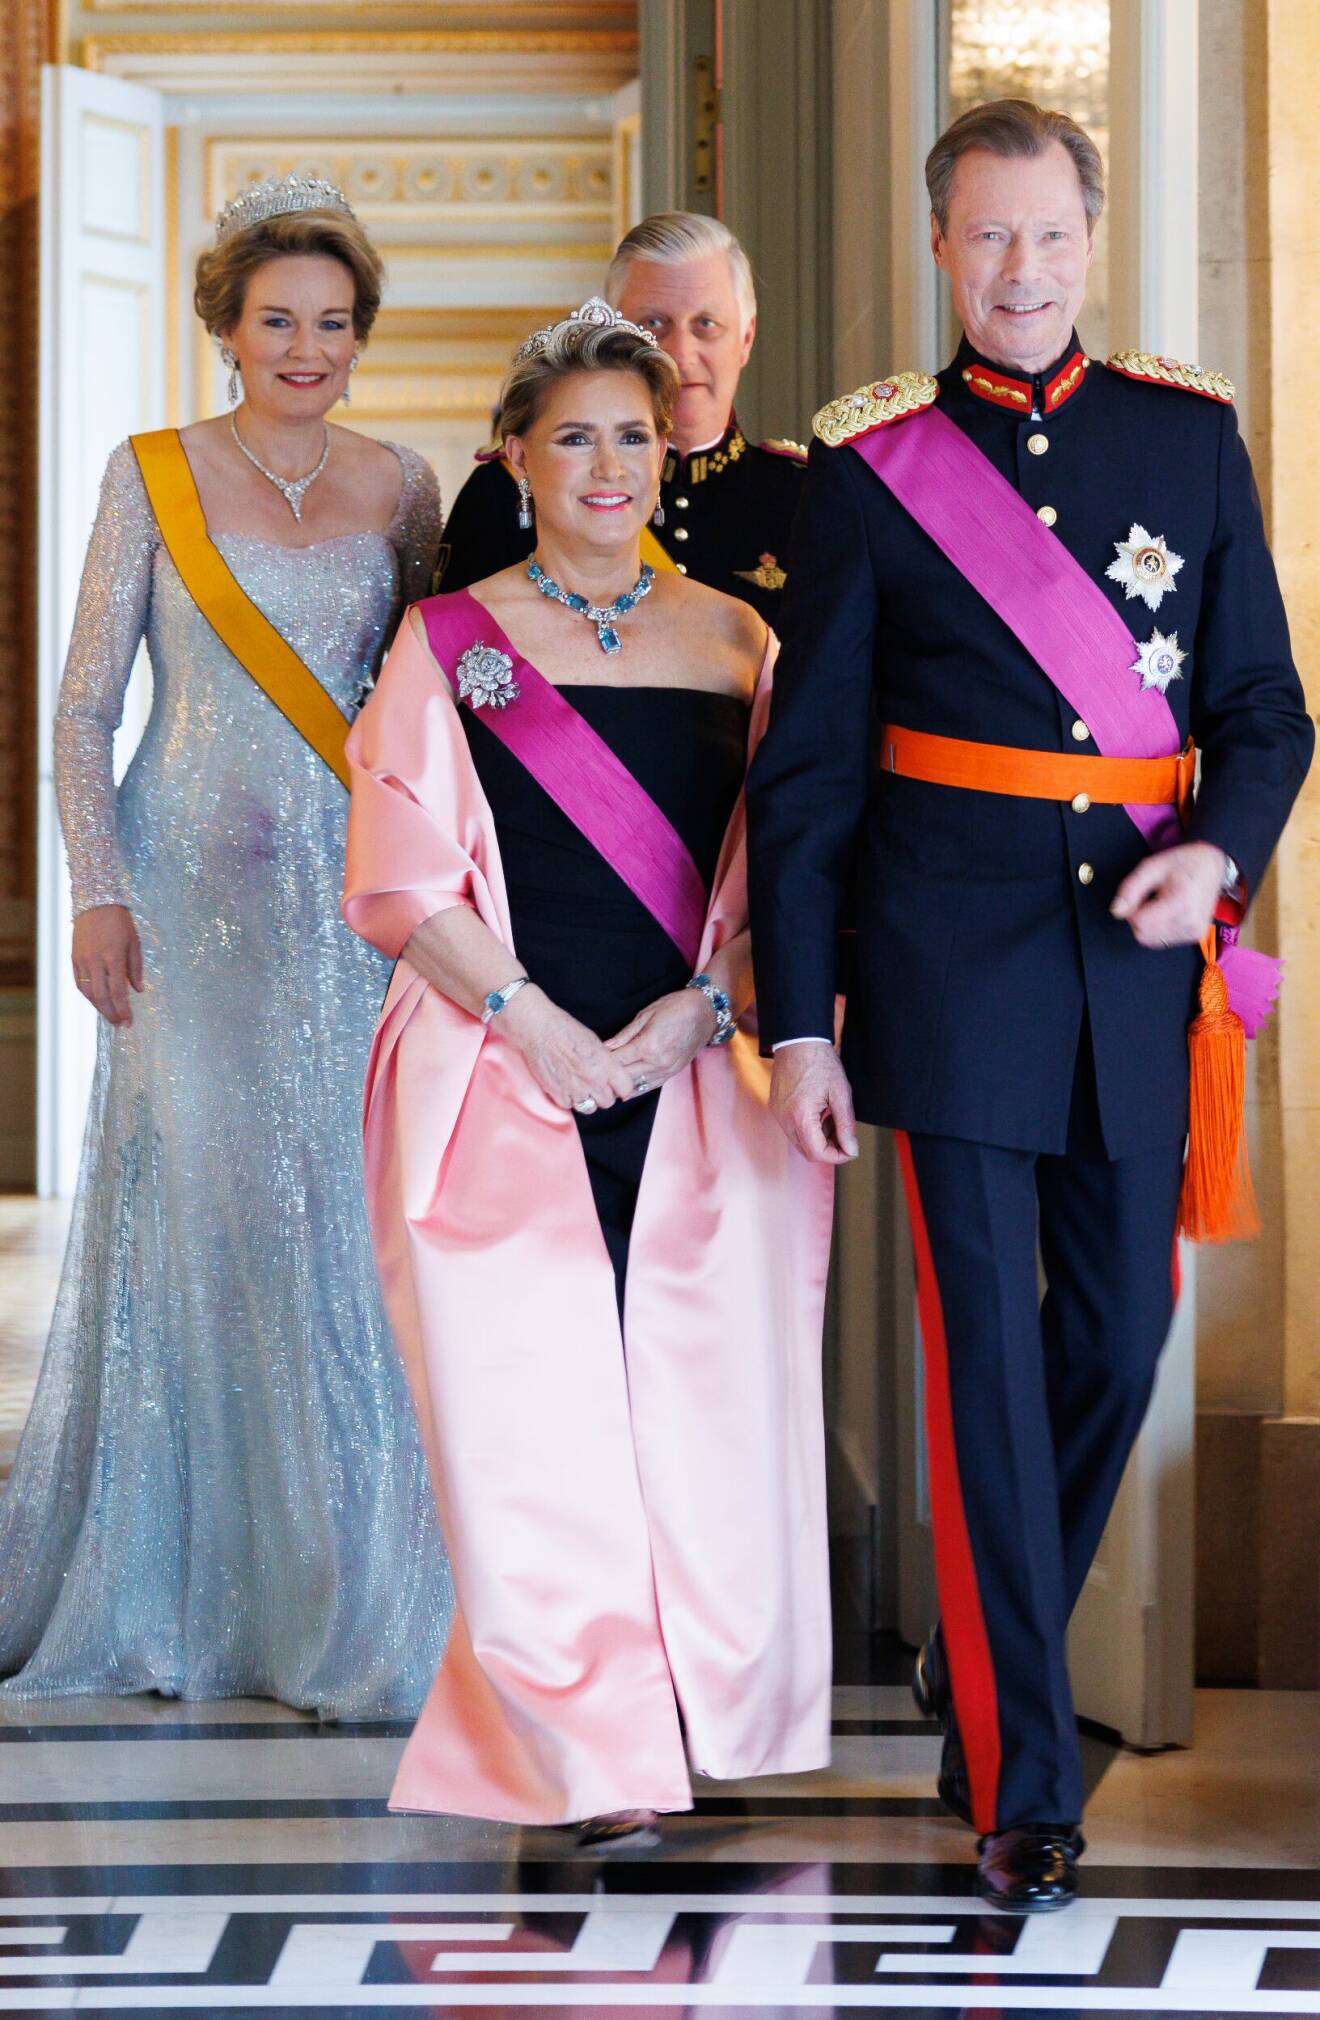 Luxemburgs storhertig Henri och hans fru Maria Teresa med Belgiens kungapar Mathilde och Philippe